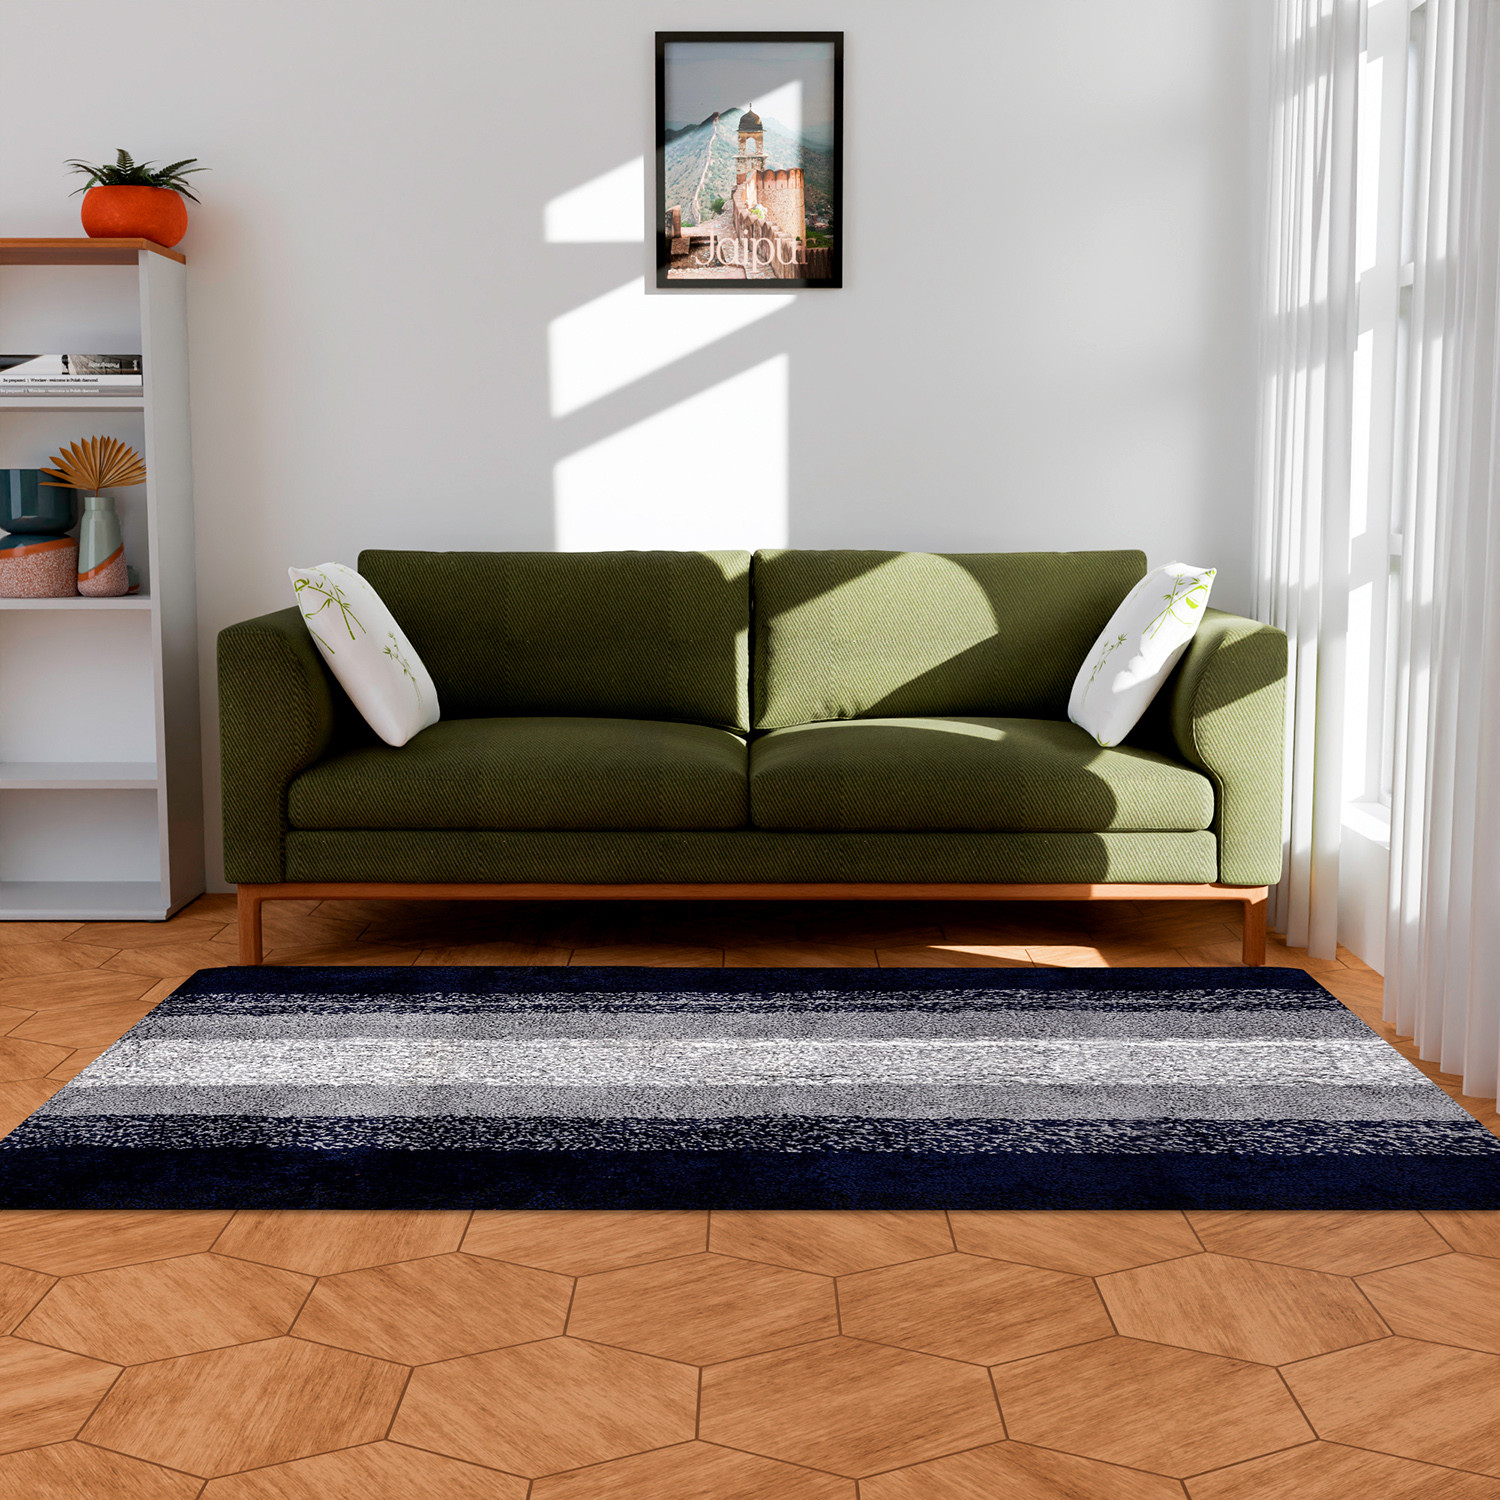 Kuber Industries Carpet | Shaggy Carpet for Living Room | Fluffy Carpet for Bedroom | Blue Patta Rainbow Carpet | Floor Carpet Rug | Non-Slip Bedside Rug | 3x5 Feet | Gray